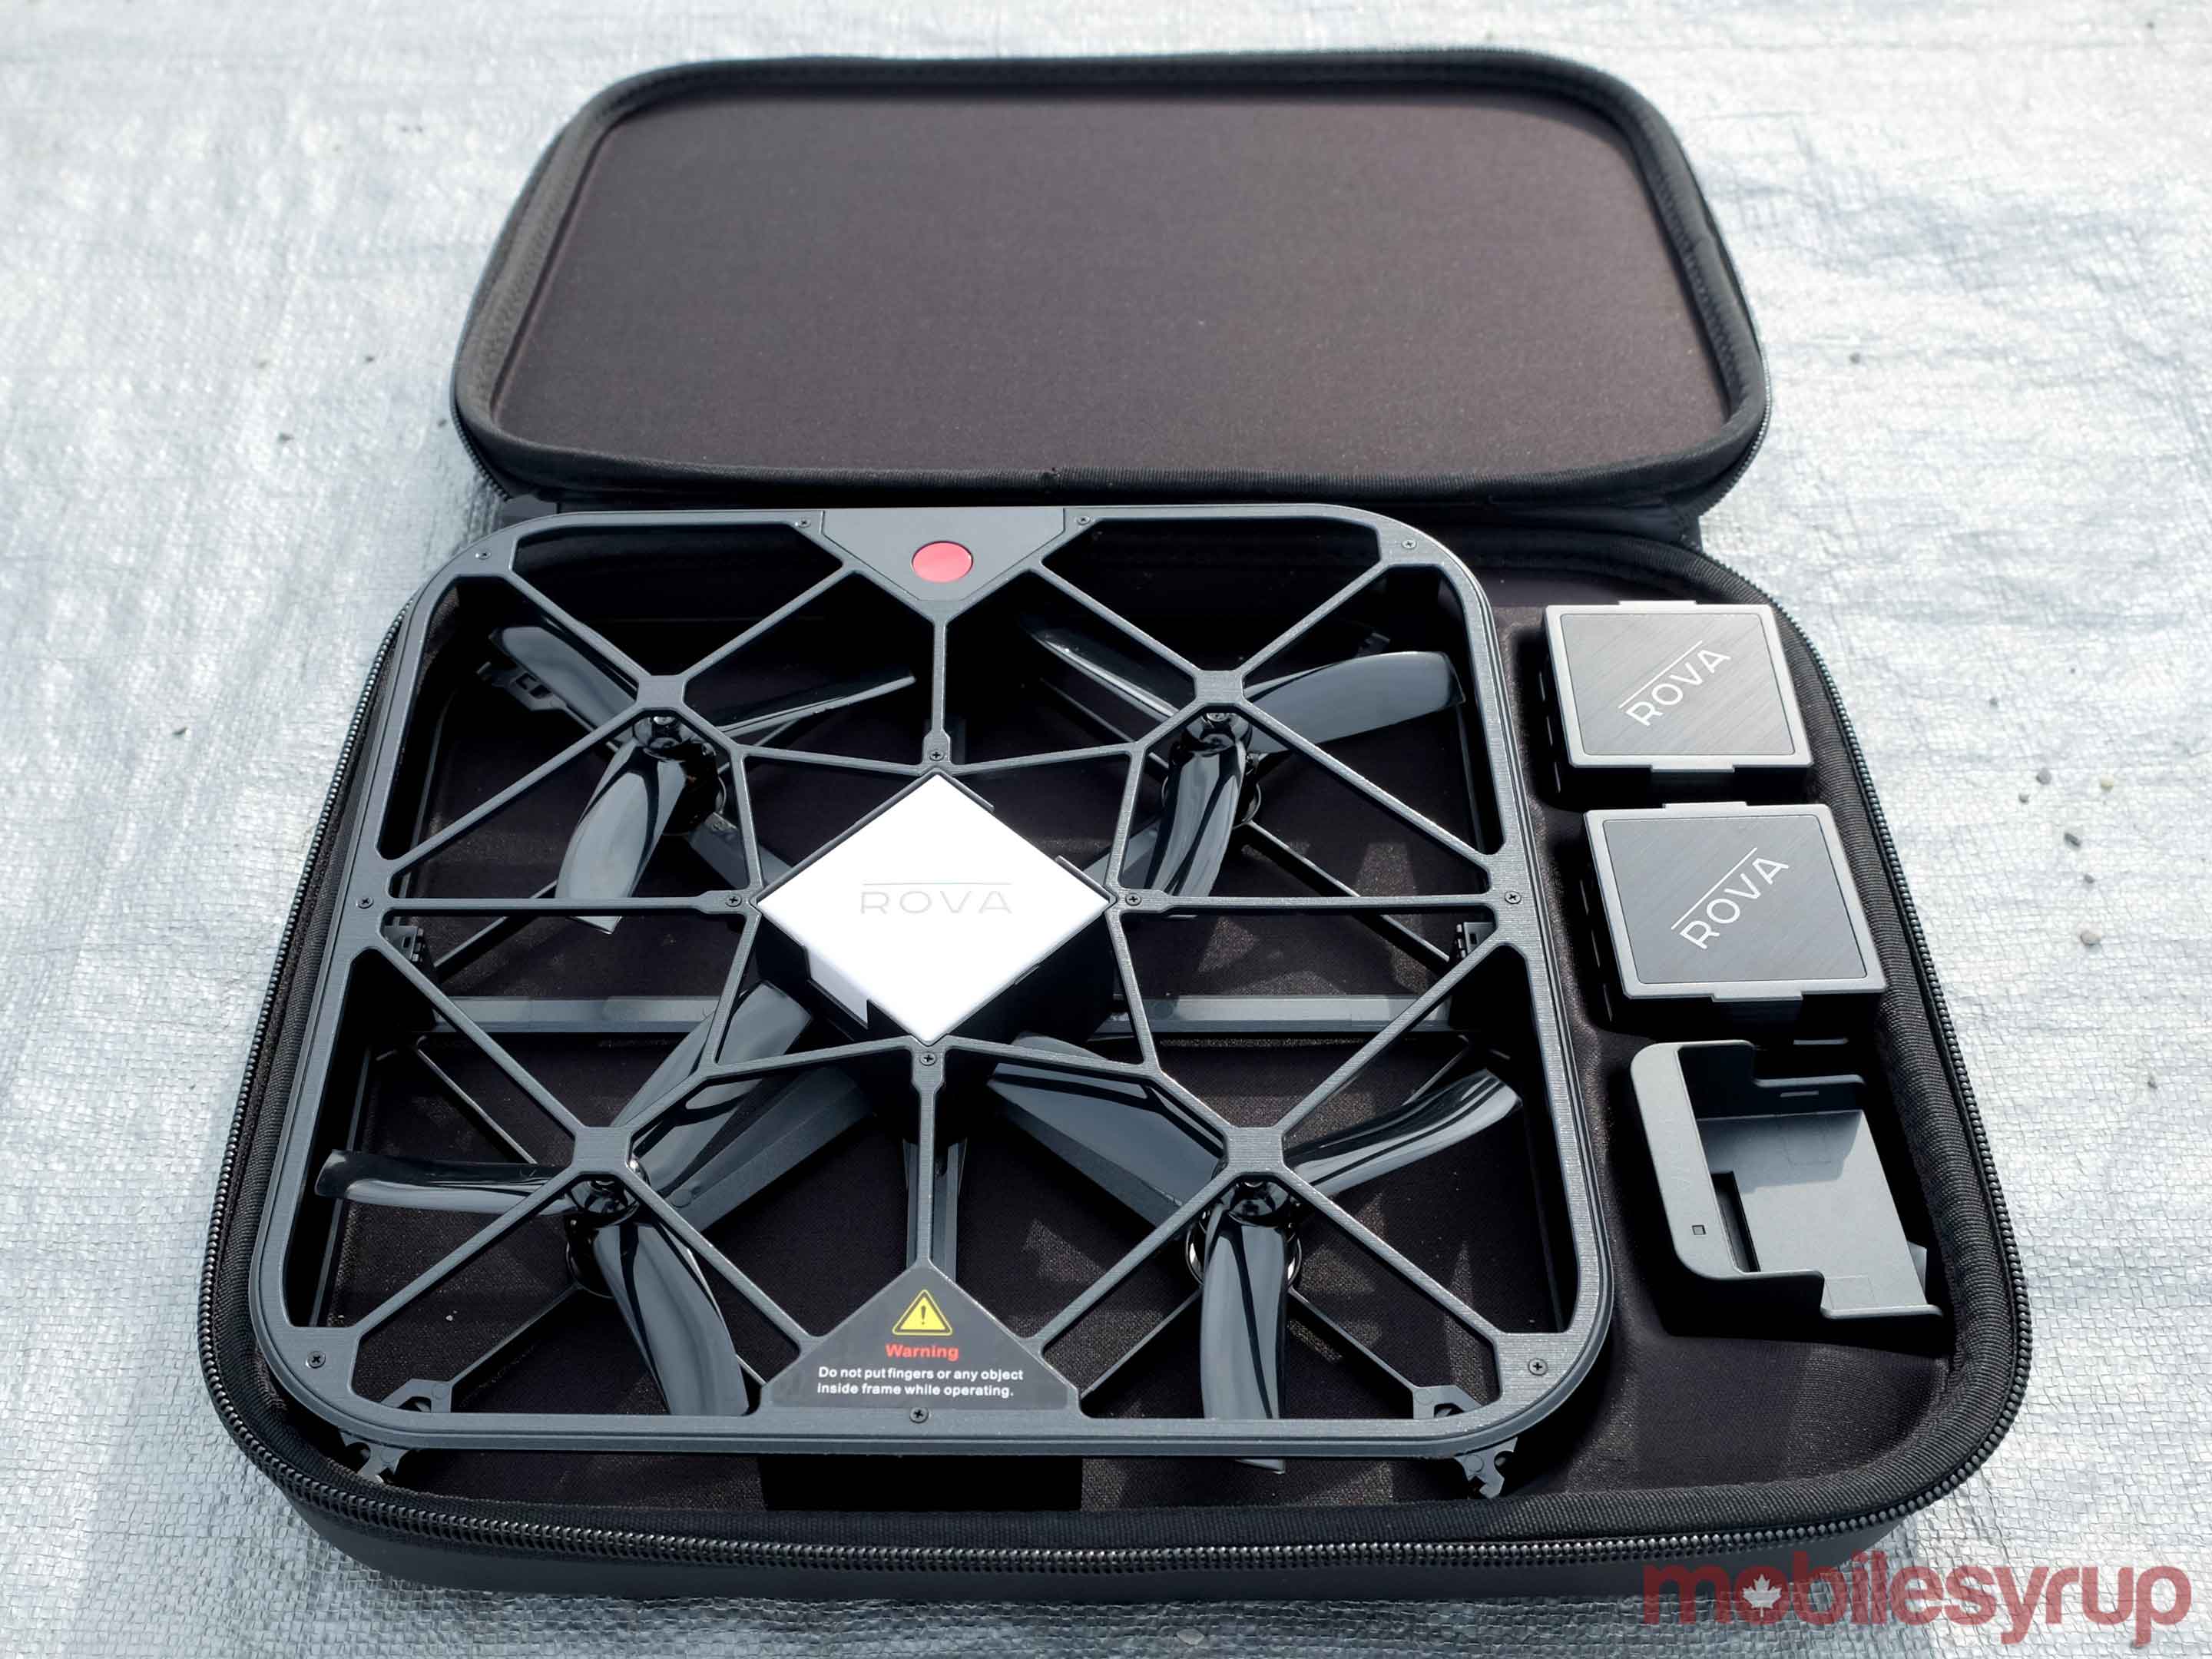 Rova selfie drone case